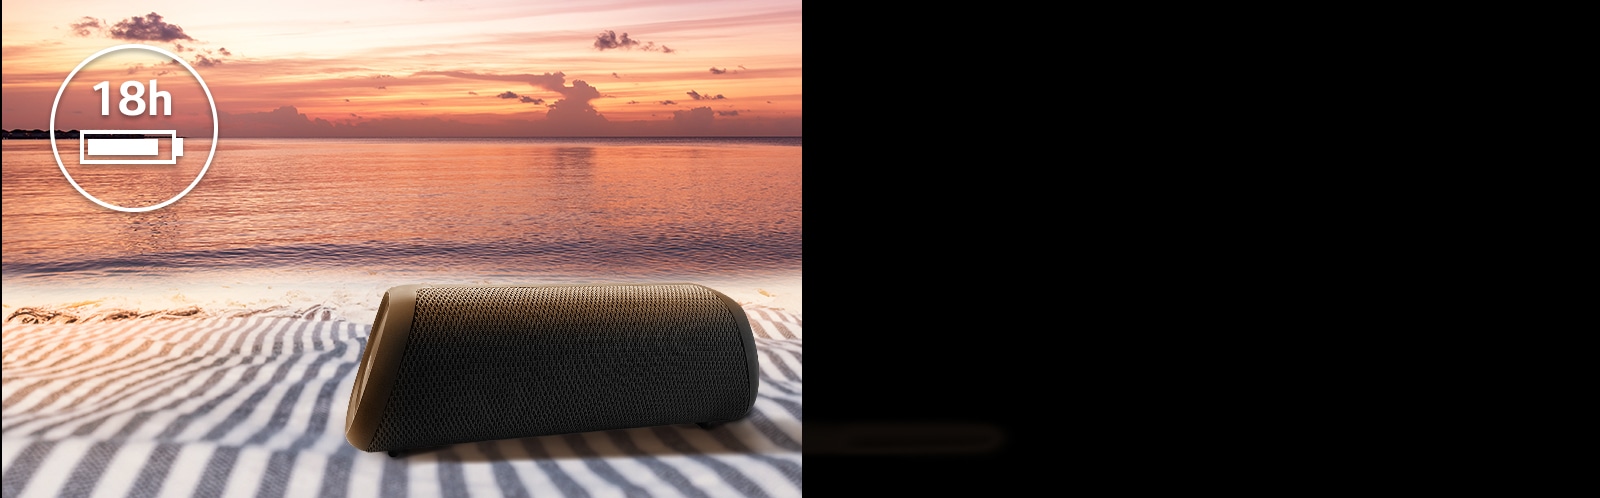 扬声器放置在海滩毛巾上。在扬声器前方，显示了夕阳海滩，表明扬声器的连续播放时间长达 18 小时。